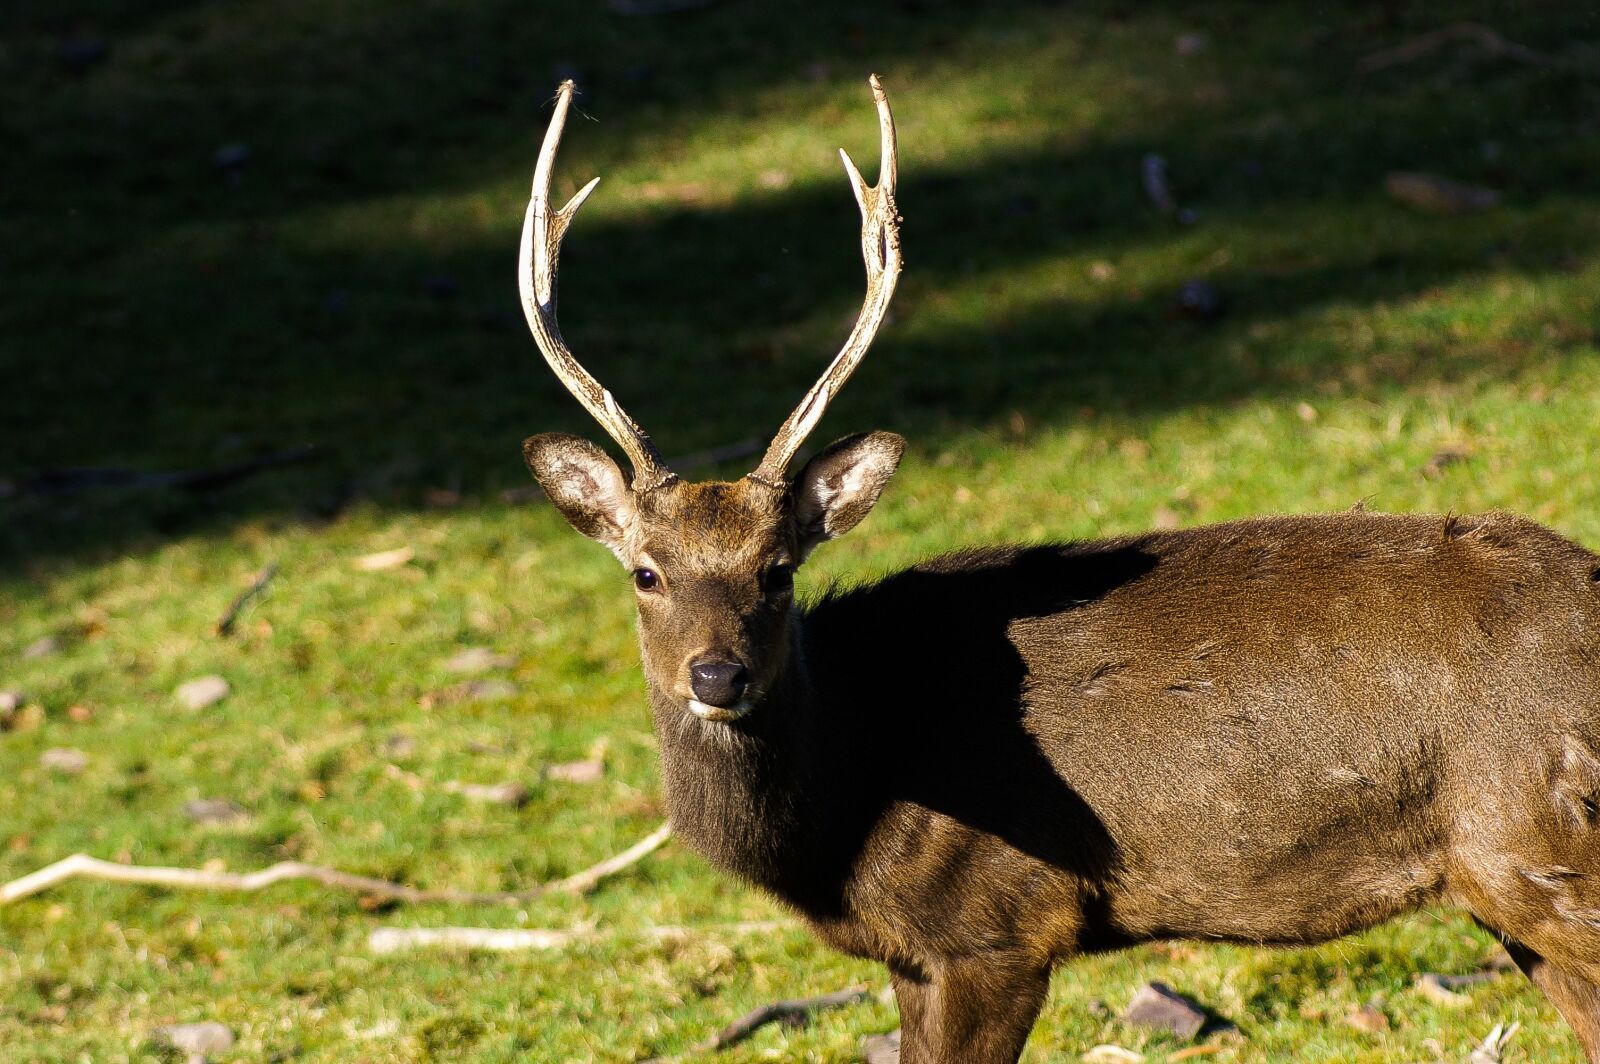 KONICA MINOLTA DYNAX 5D sample photo. Deer, nature, hirsch photography